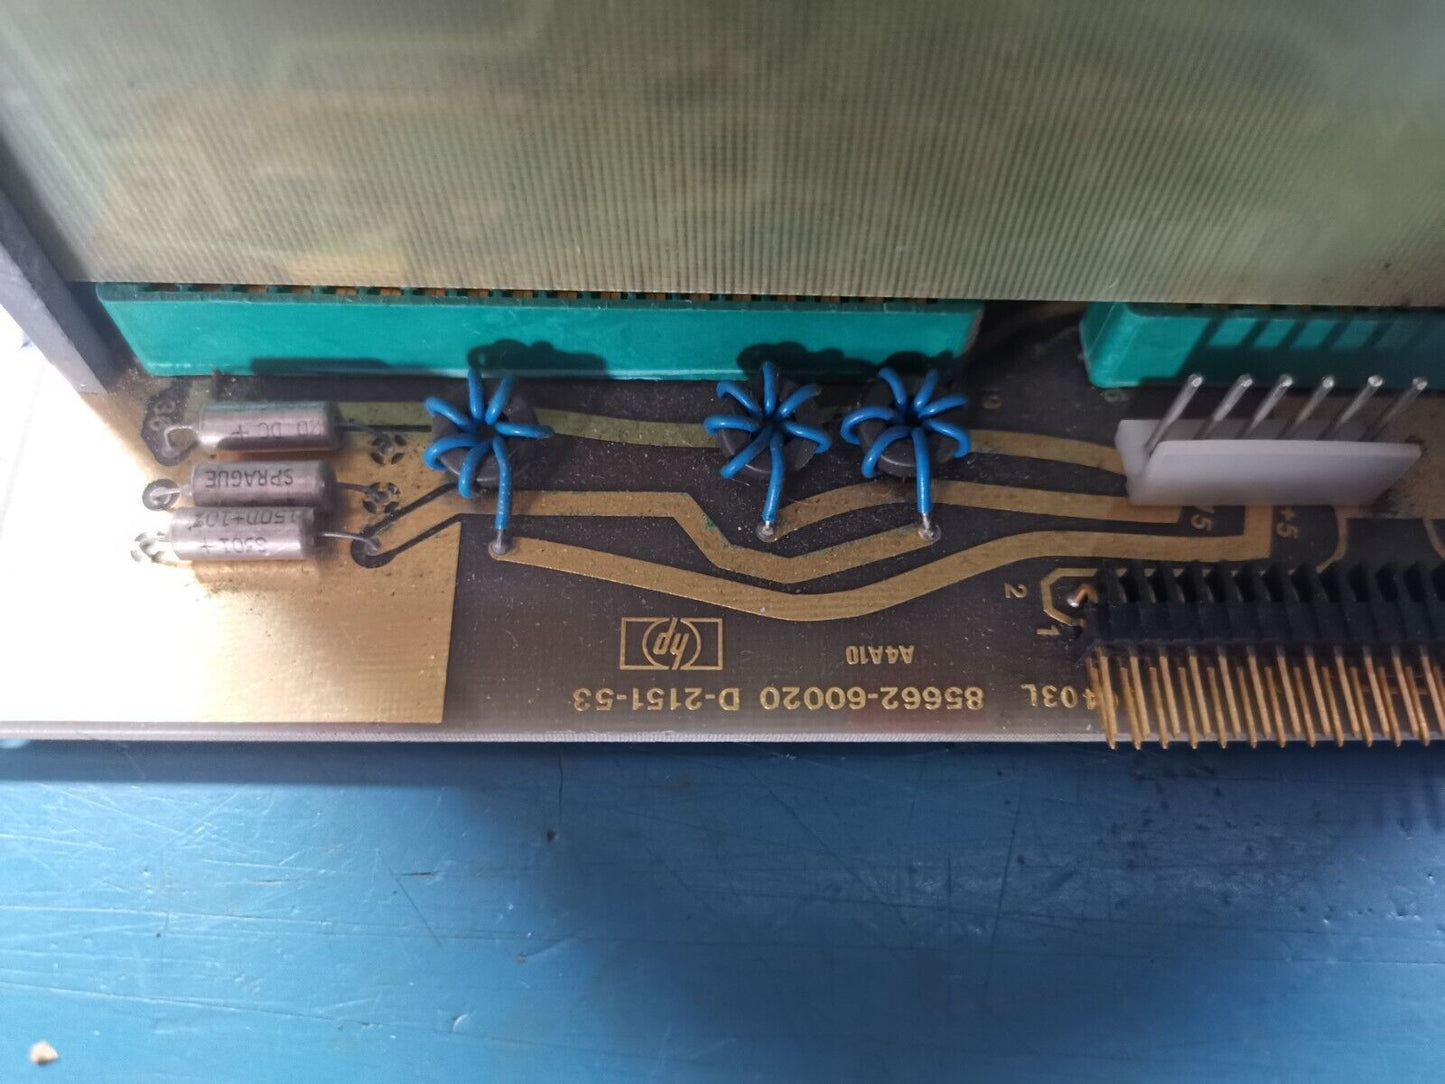 HP 85662 Spectrum Analyzer PCB Boards In Block A8 A7 A6 A5 A4 A3 A2 A1